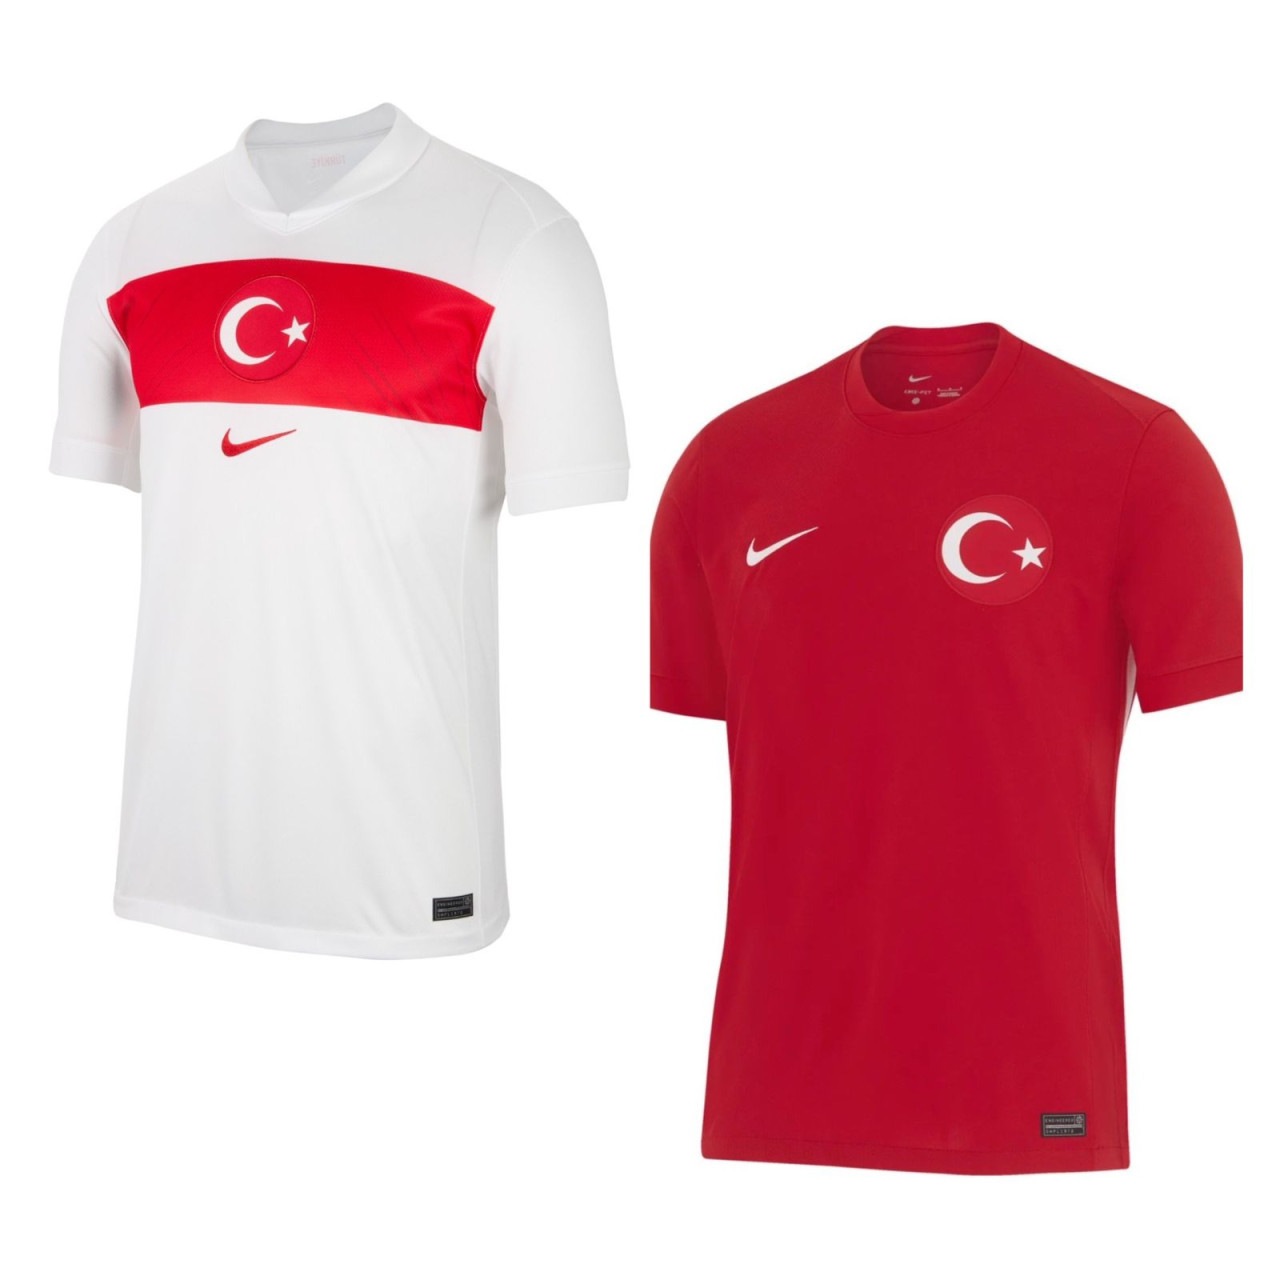 Camiseta titular y suplente de Turquía.